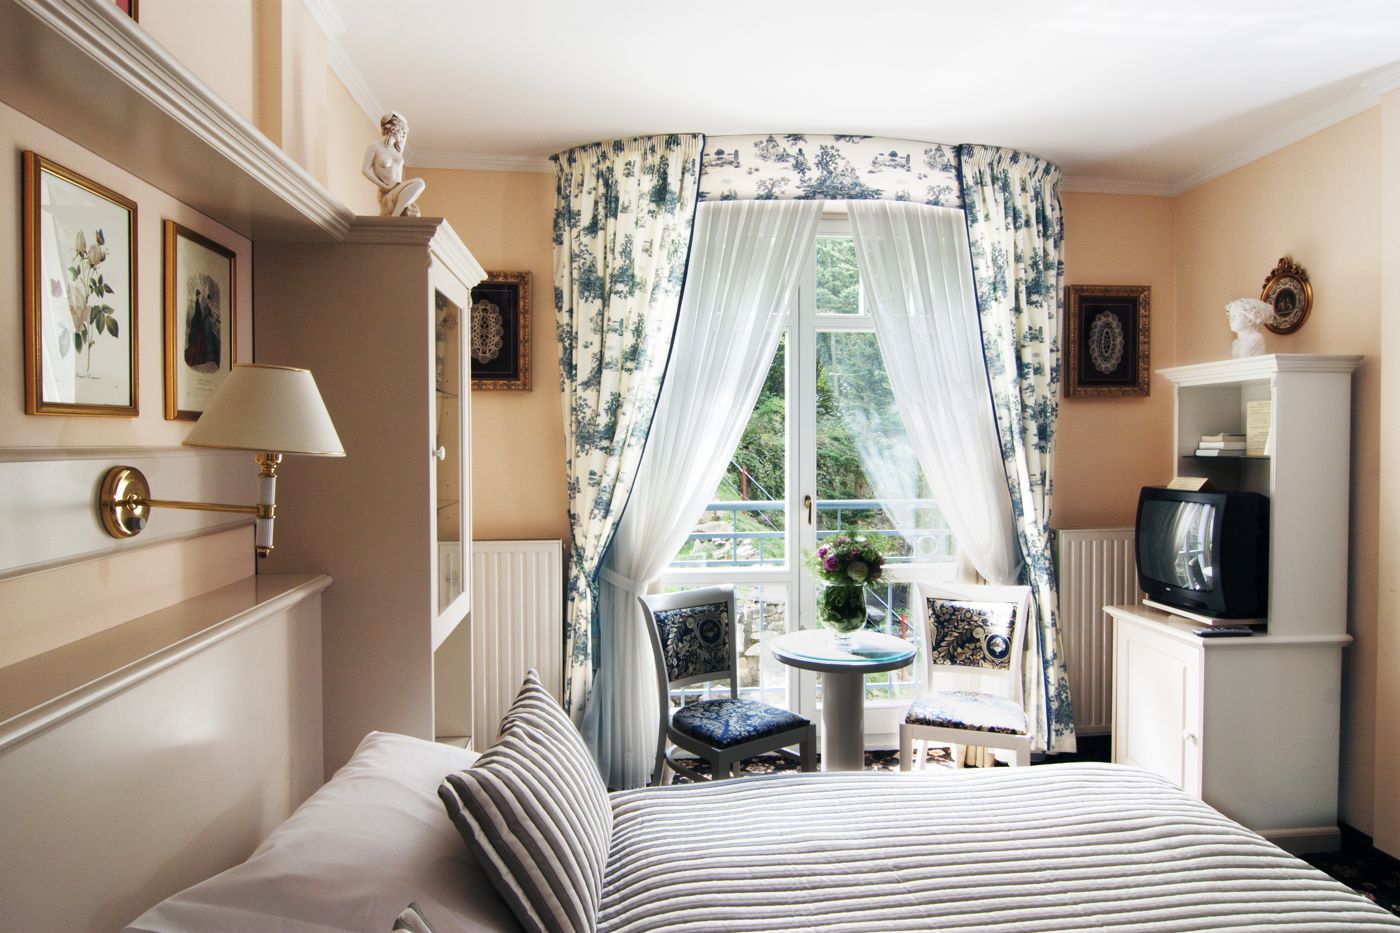 Lázeňský hotel Aura Palace – luxusní ubytování, třílůžkový pokoj